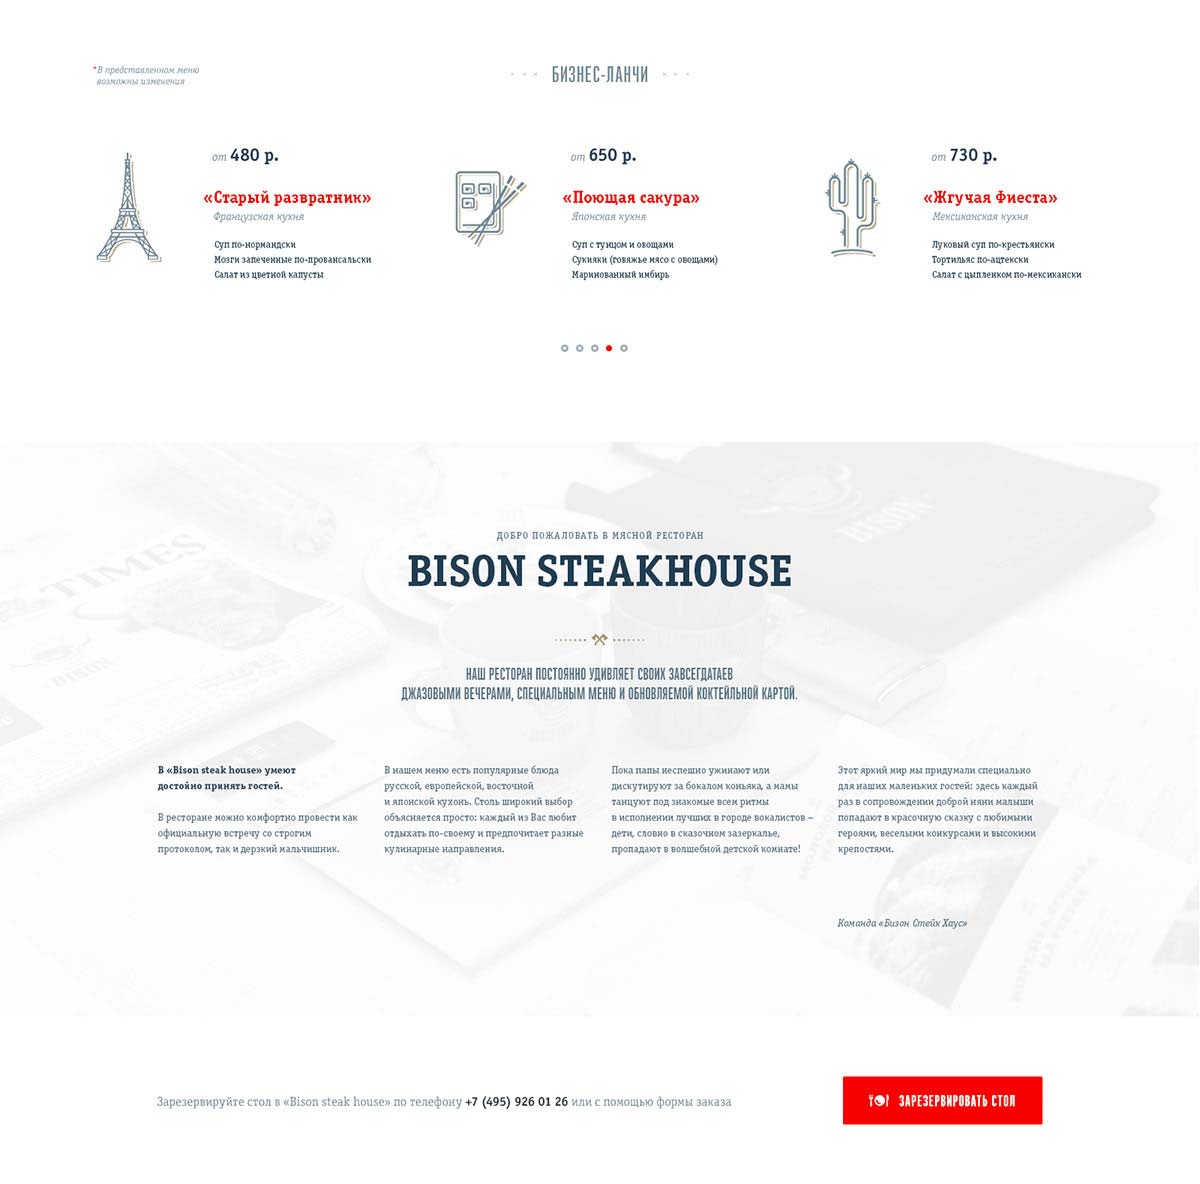 Дизайн главной страницы сайта мясного ресторана Bison Steakhouse.